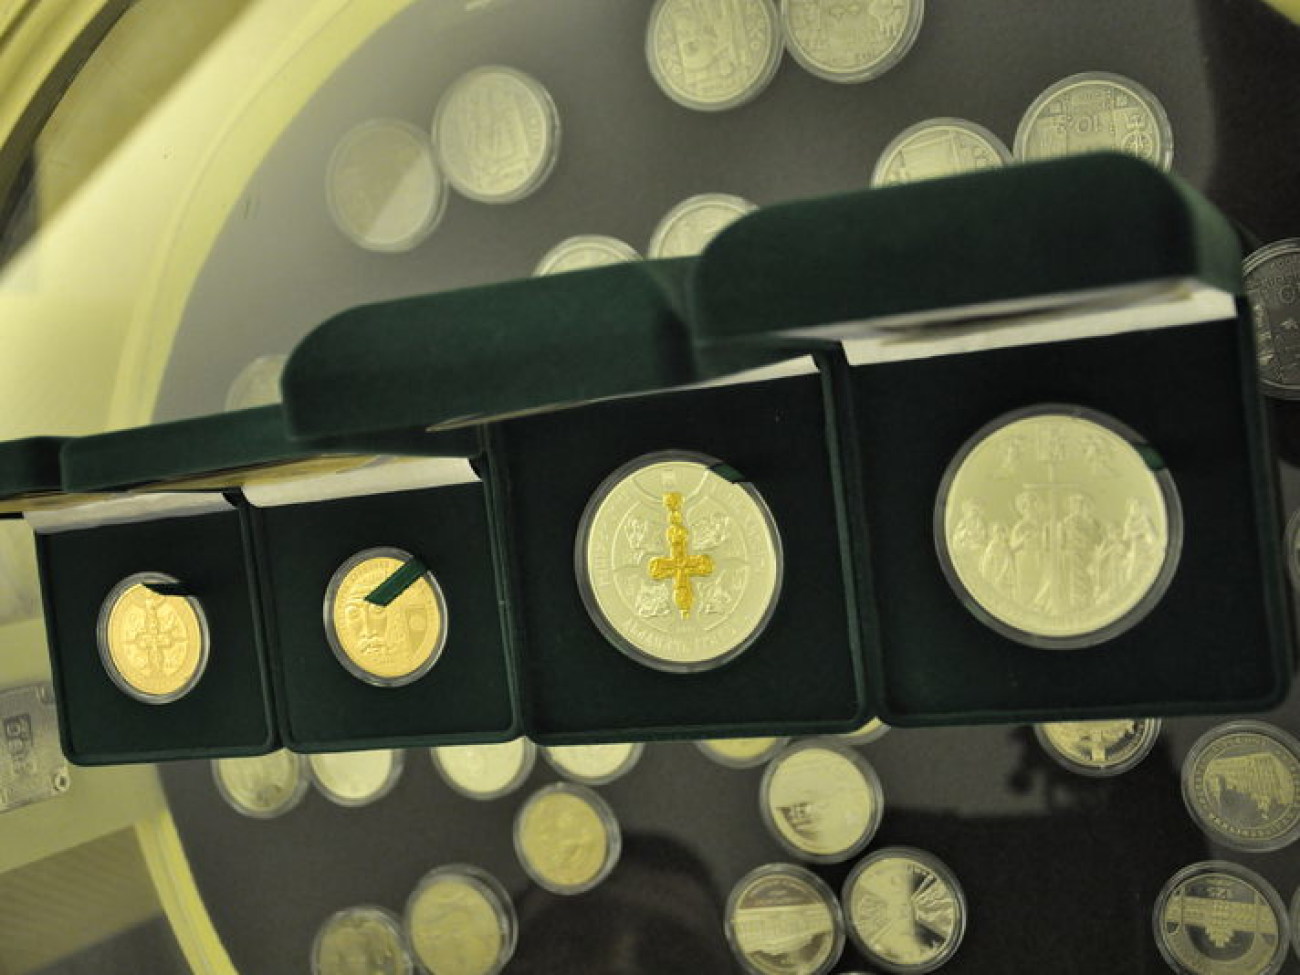 Нацбанк представил монету «1025-летия крещения Киевской Руси», 3 июля 2013г.